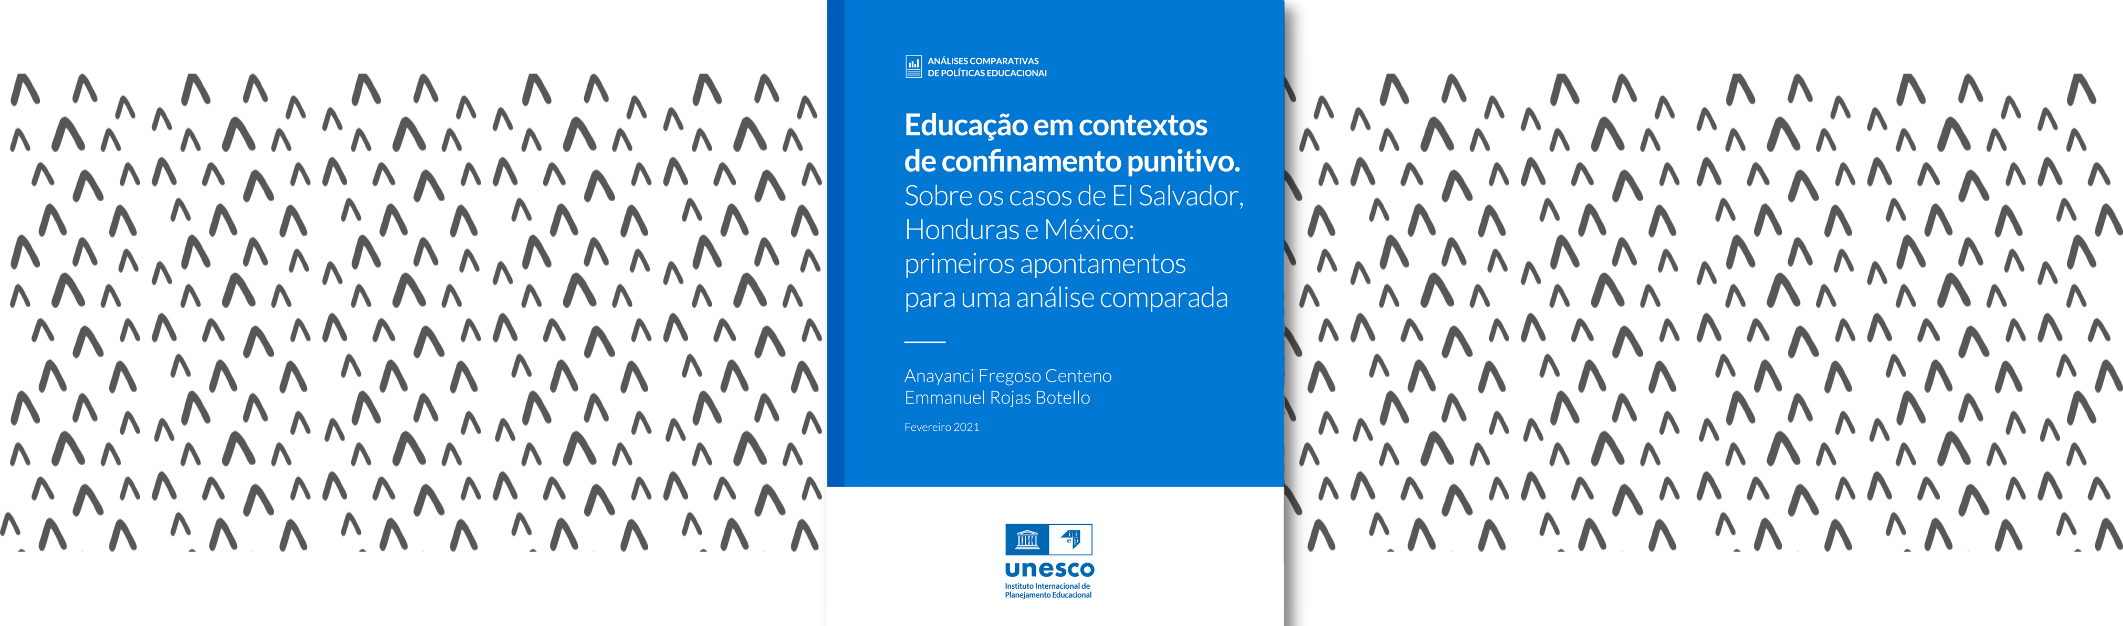 Educação em contextos de confinamento punitivo sobre os casos de El Salvador, Honduras e México: primeiros apontamentos para uma análise comparada